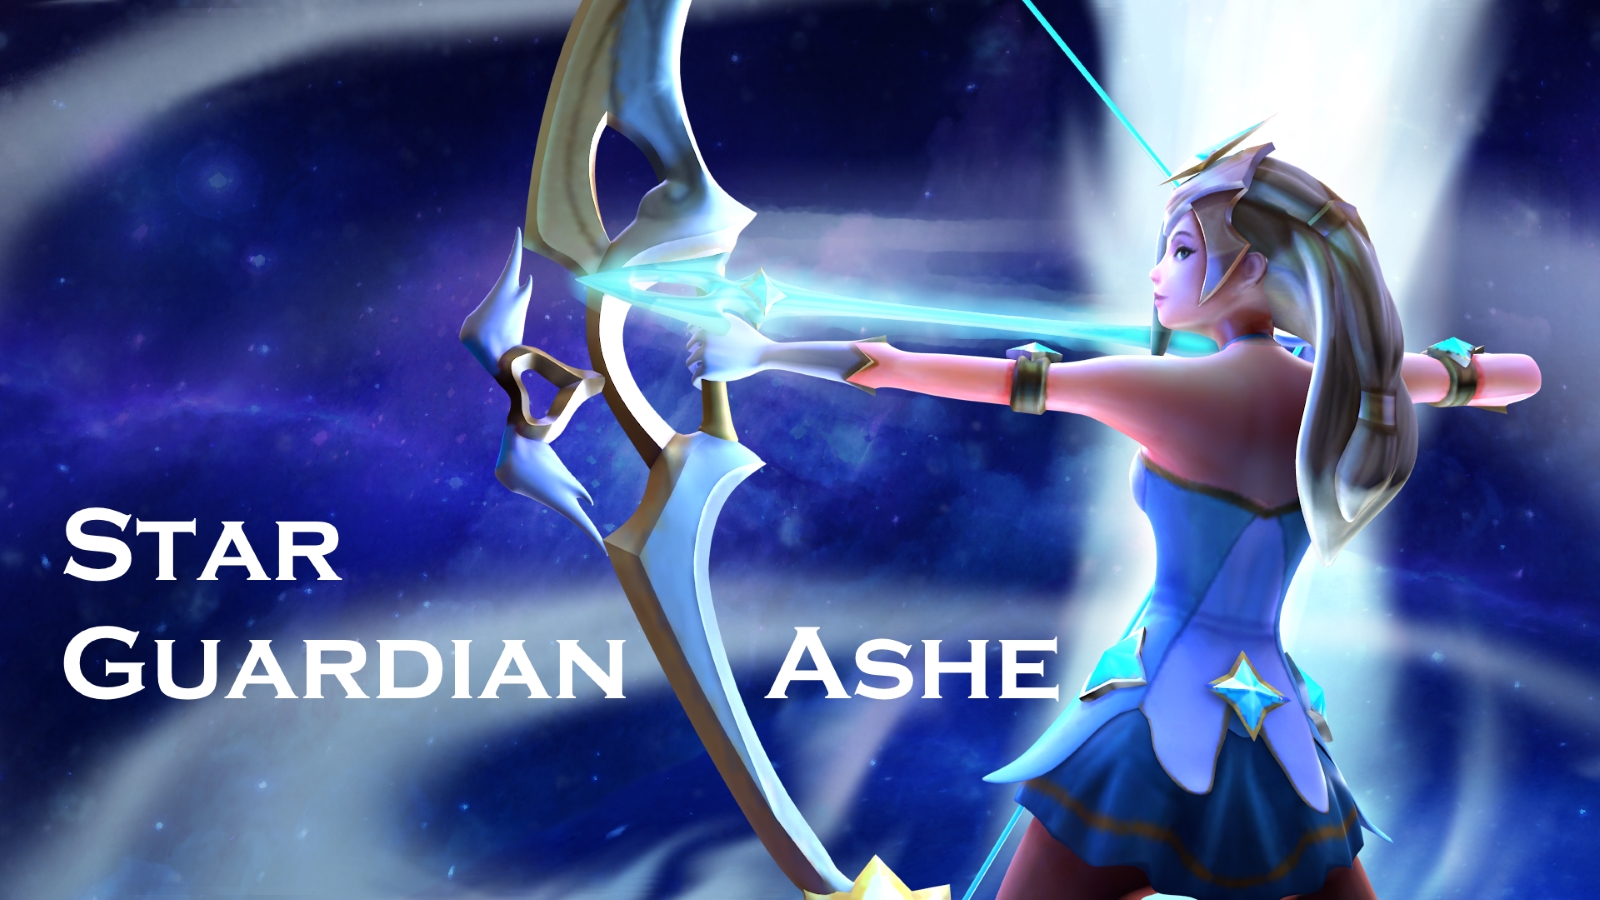 Star Guardian Ashe